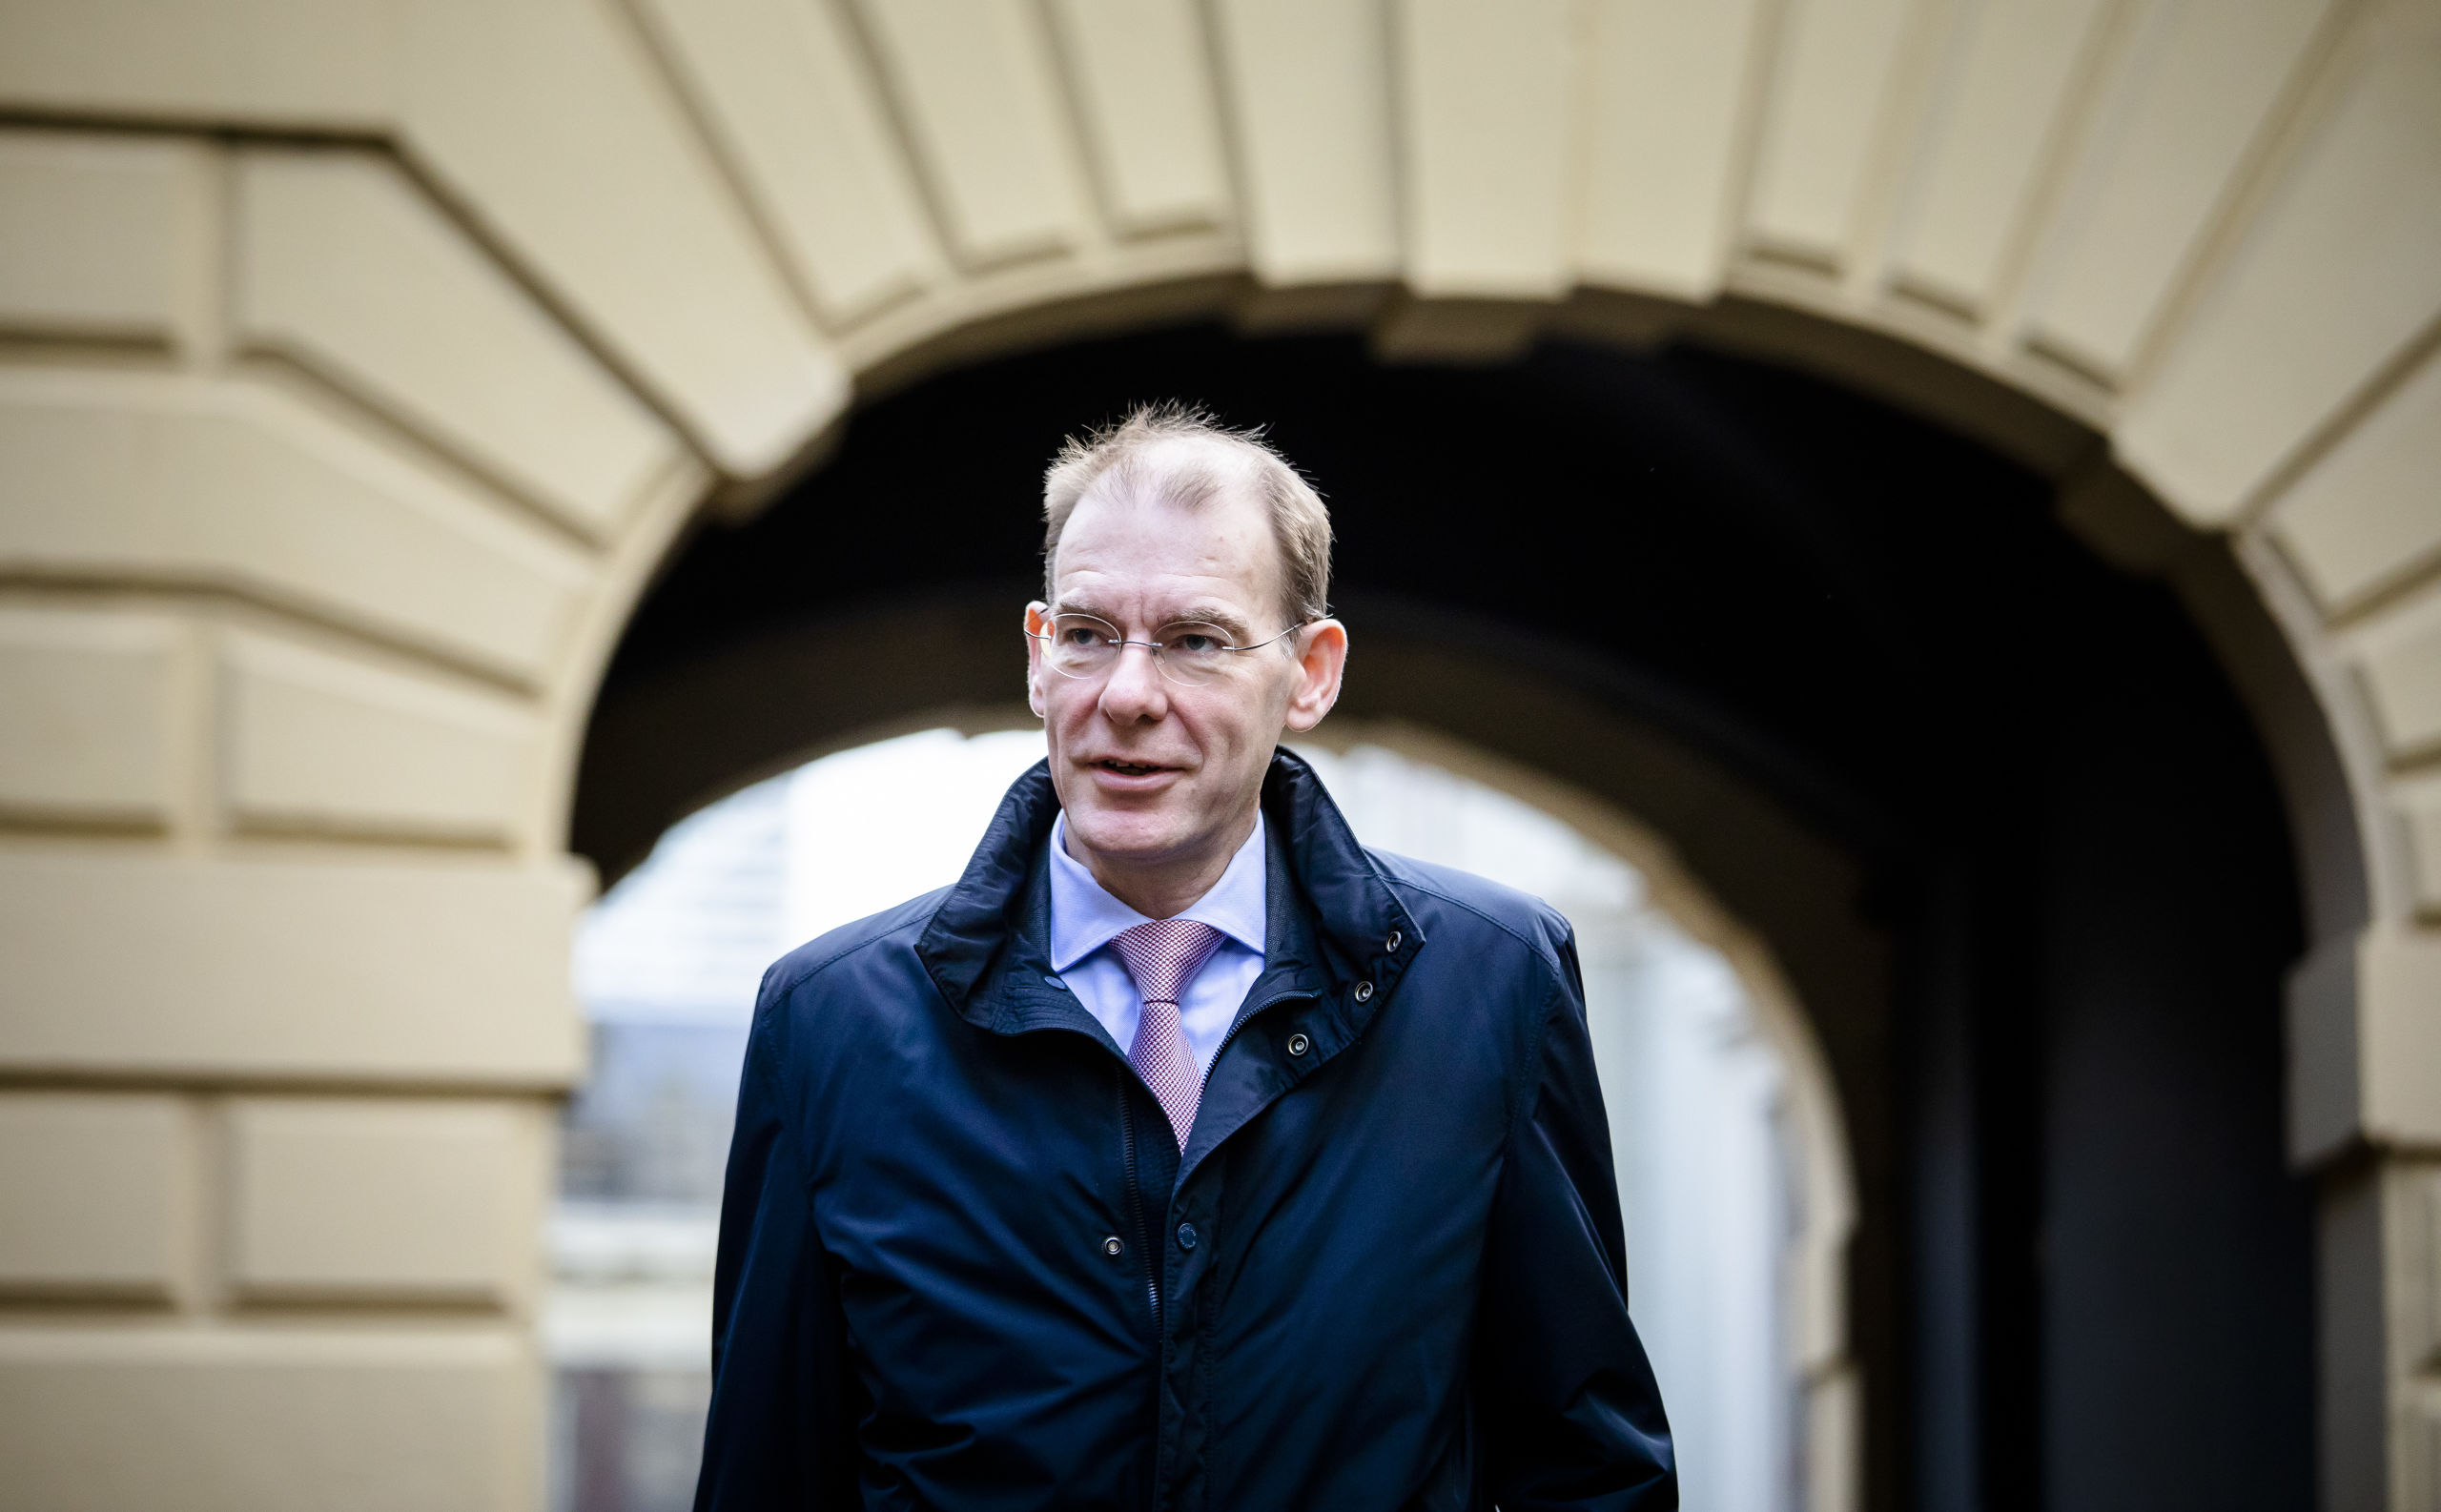 Staatssecretaris Menno Snel van Financiën (D66) bij aankomst op het Binnenhof voor de wekelijkse ministerraad. 